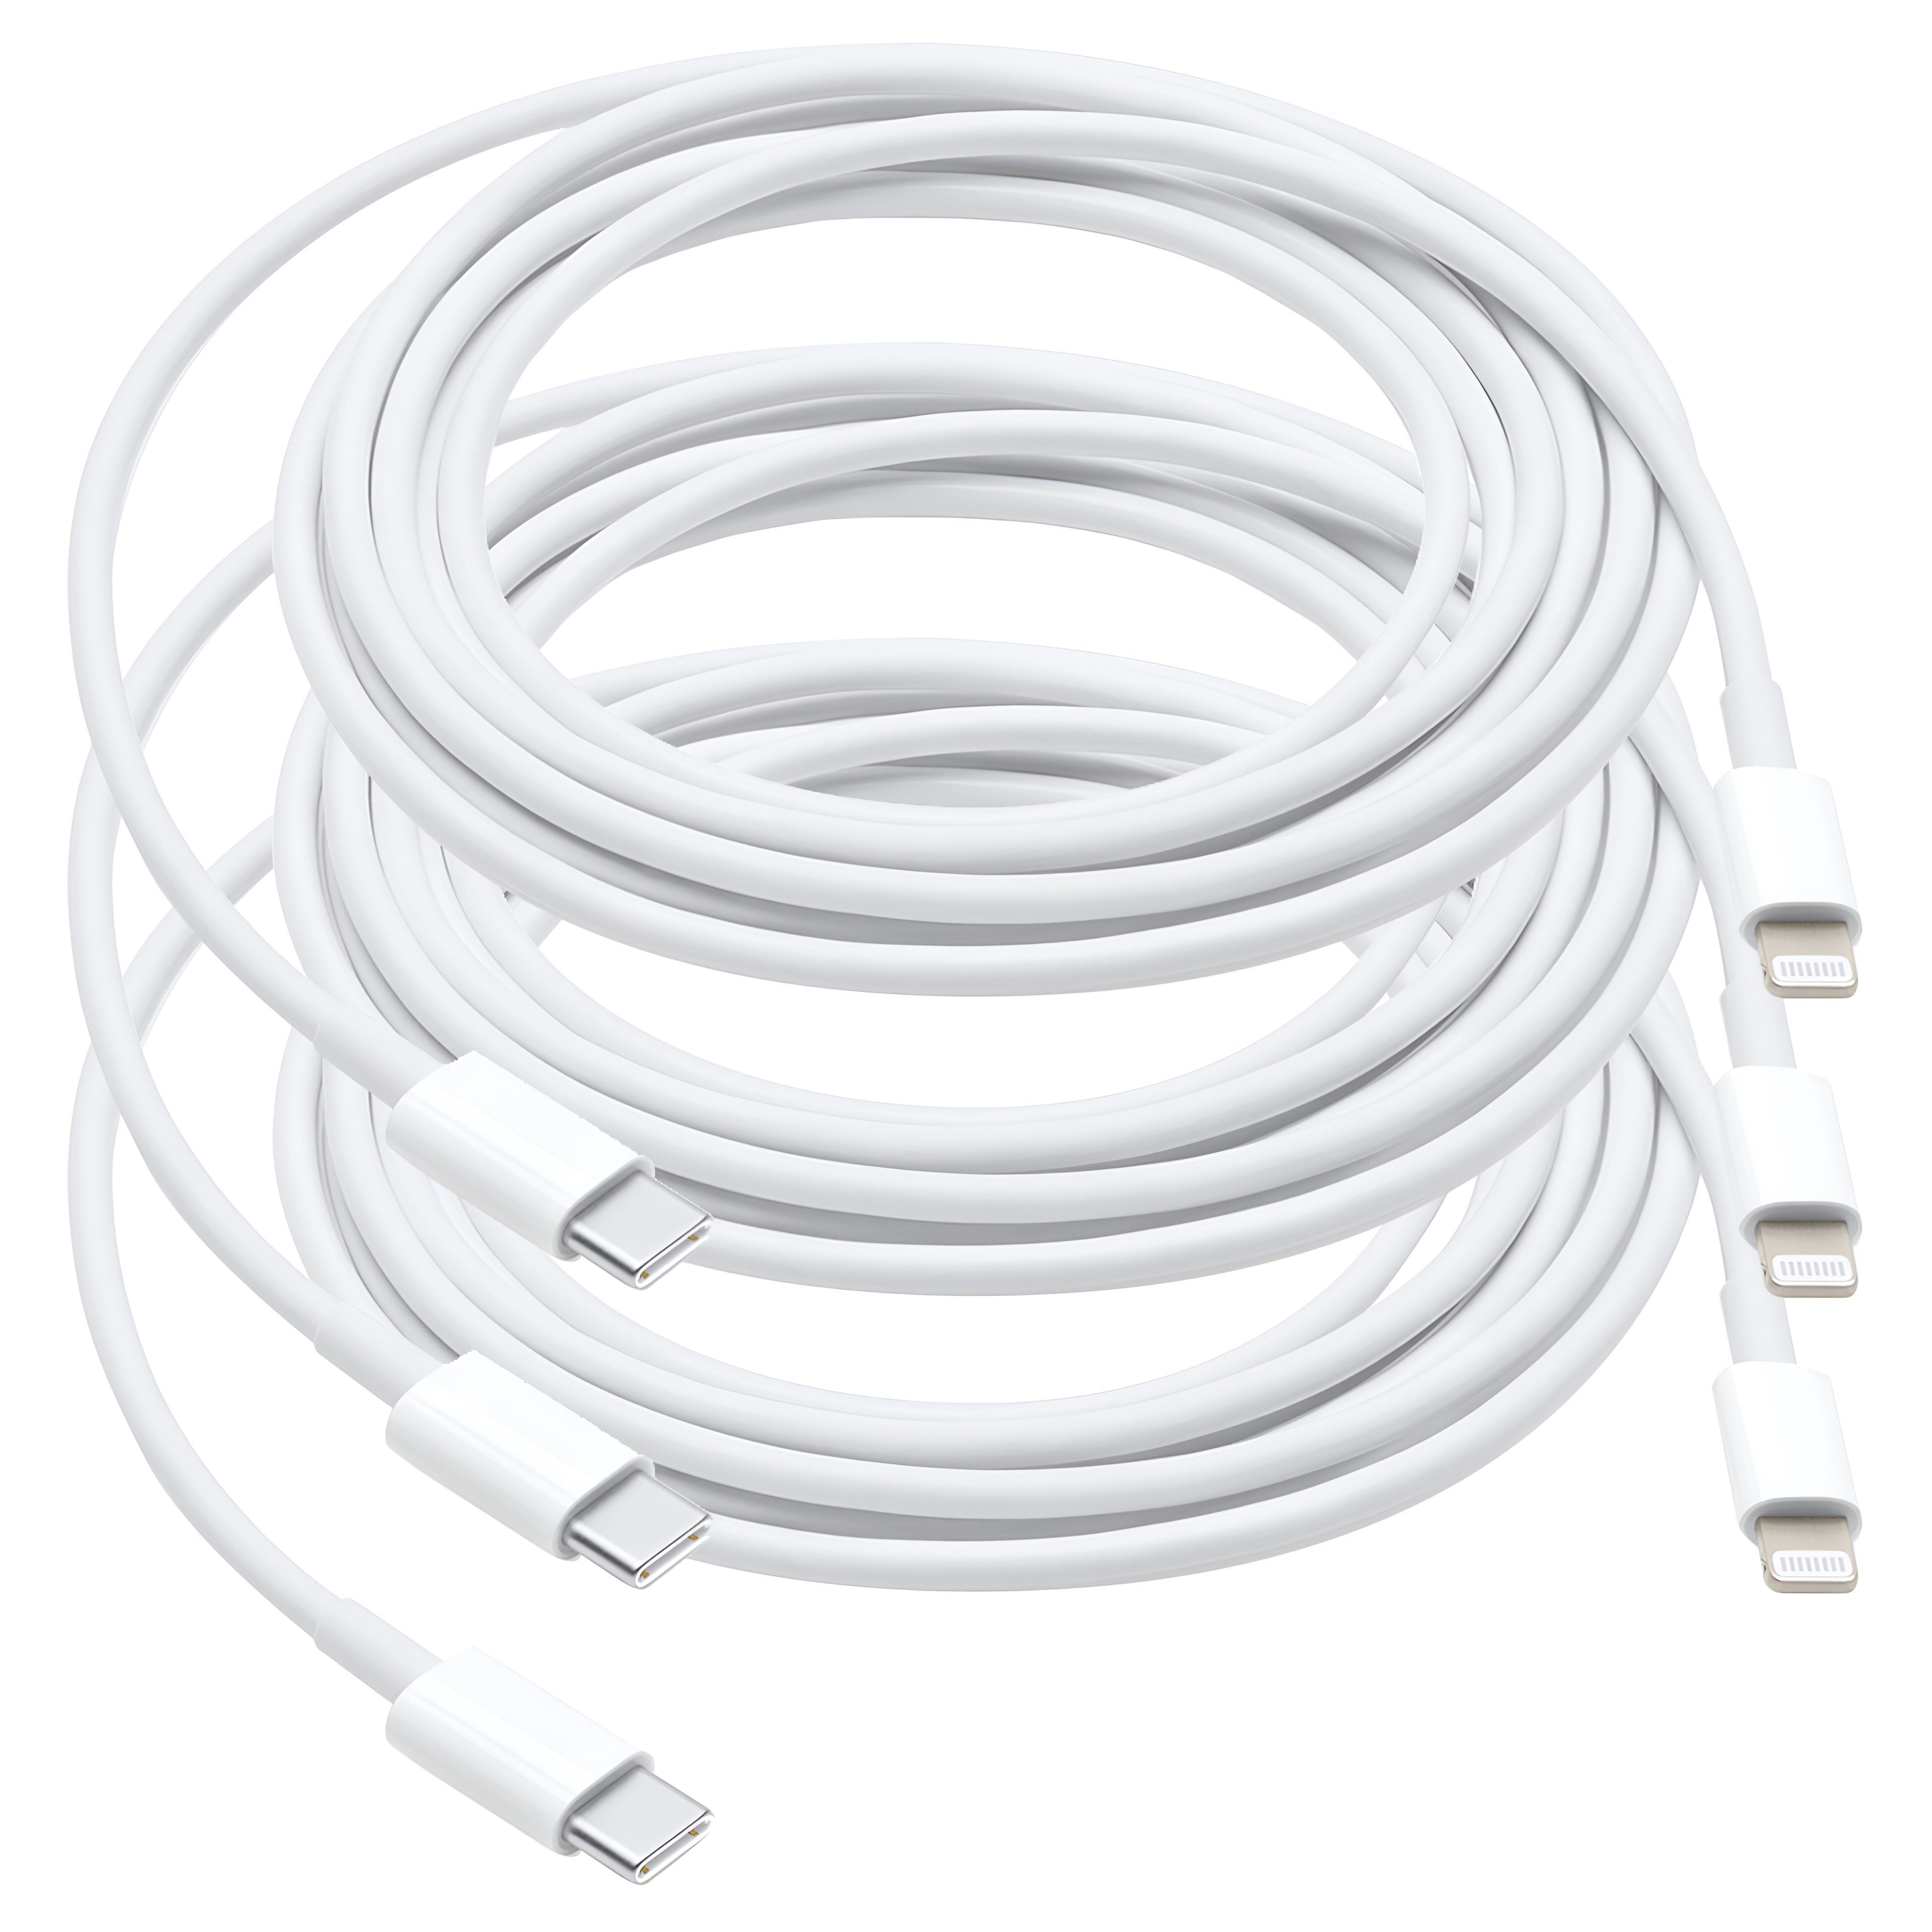 Cyoo 3 er Ladekabel USB-C to Lightning Kabel für Apple iPhone iPad Smartphone-Kabel, USB-C, Lightning (100 cm), Schnellladefunktion, Robustes Design, 3er-Pack